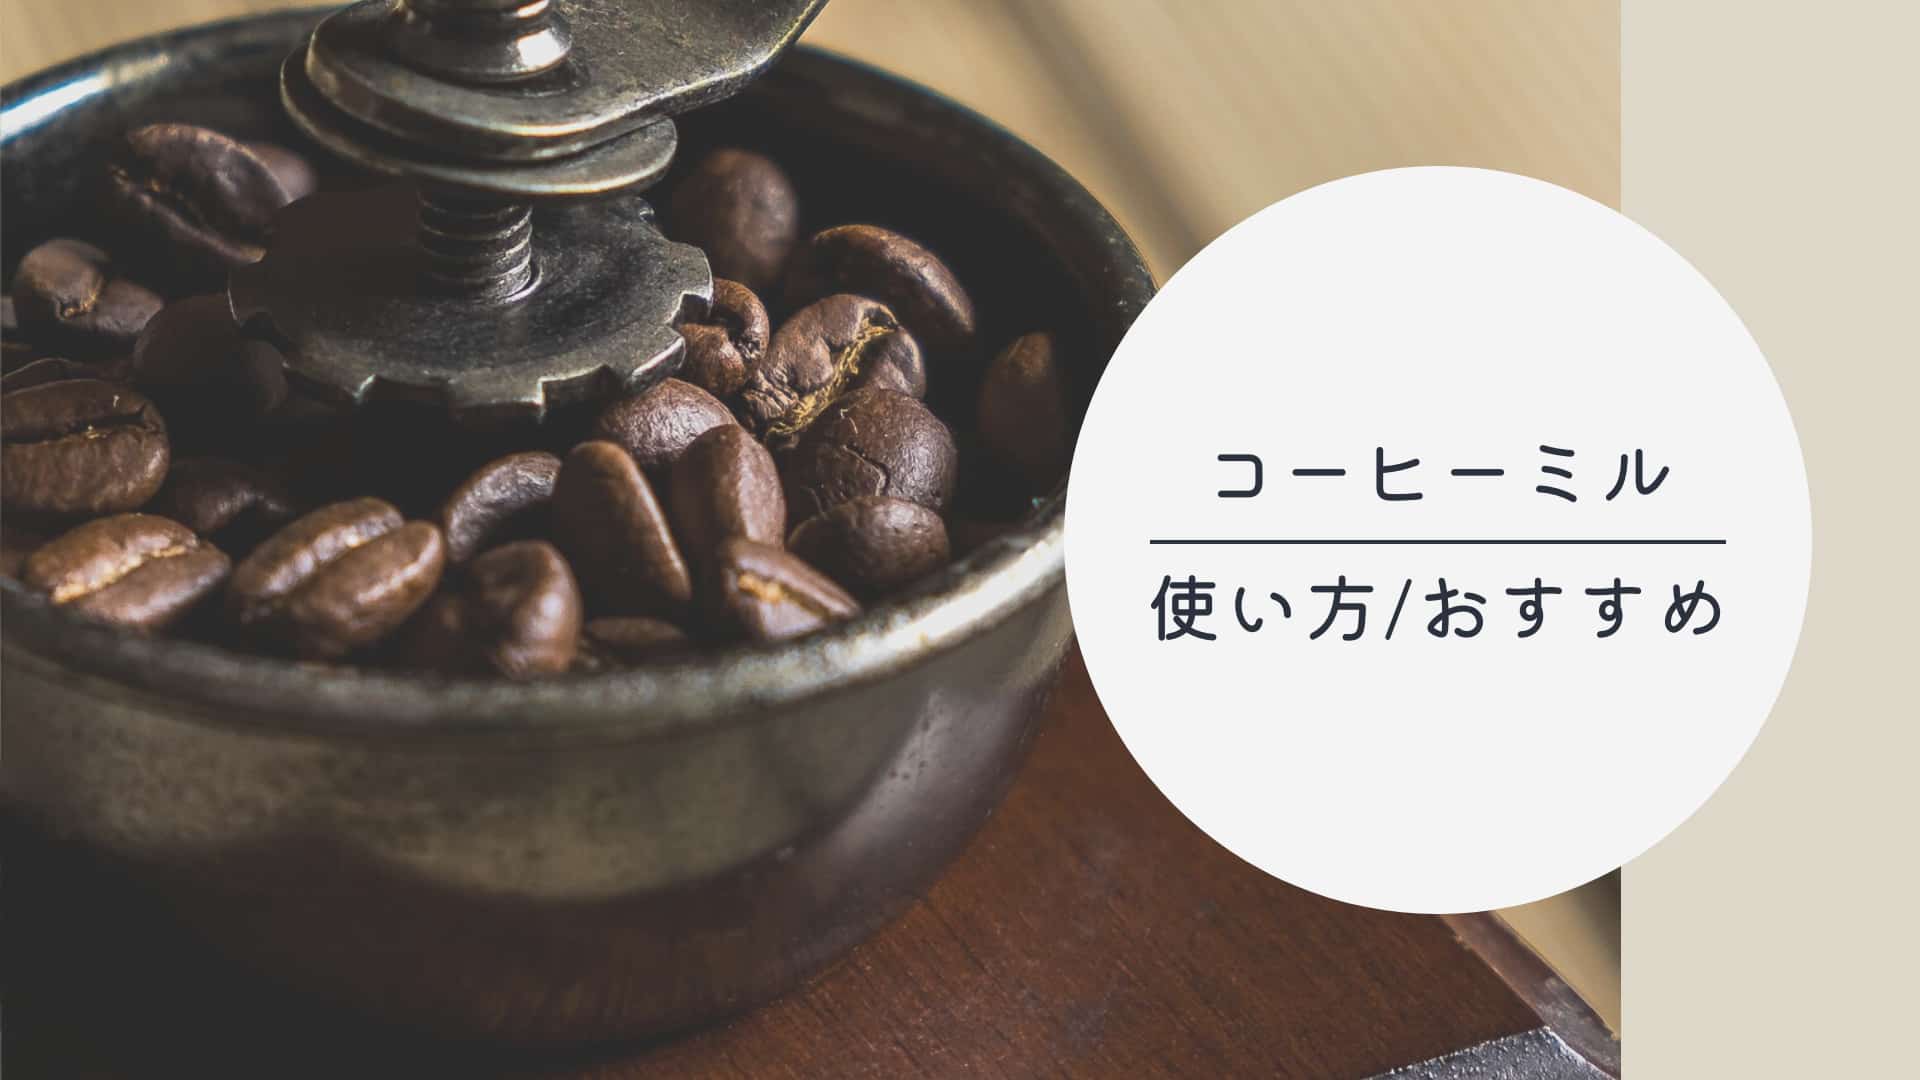 コーヒーミルで世界が広がる。使い方やおすすめのミルを紹介